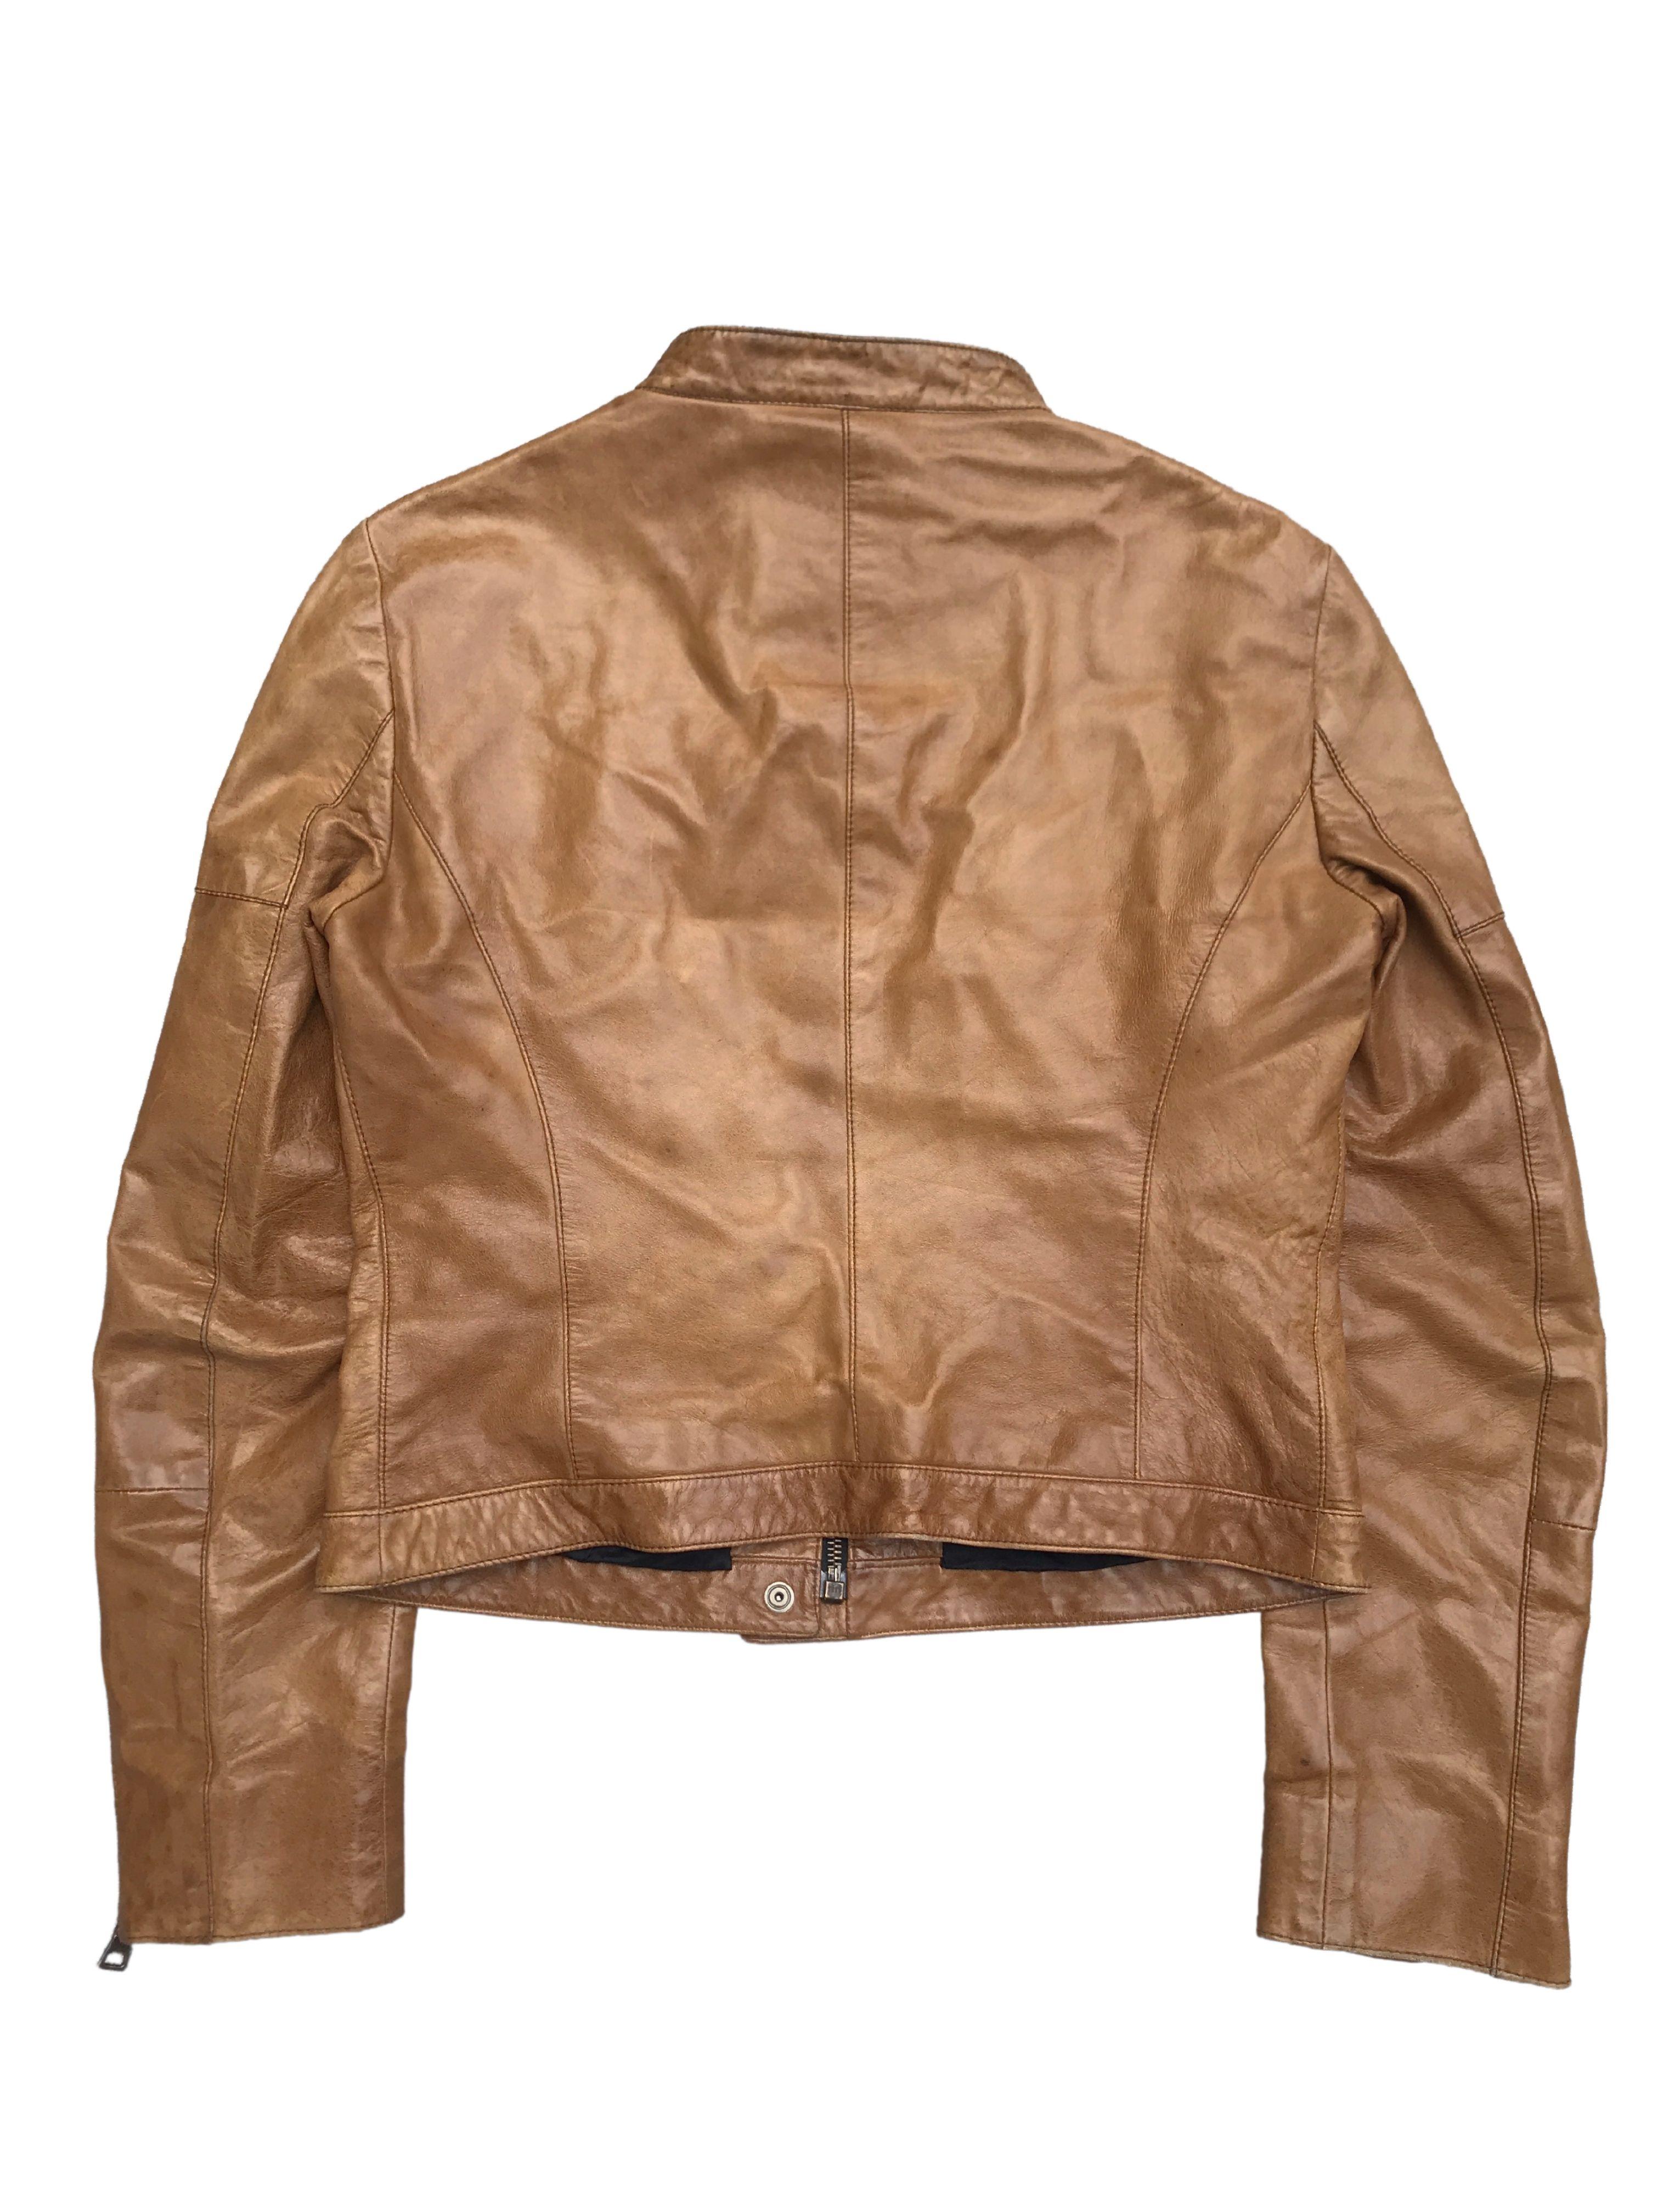 prada vintage leather jacket